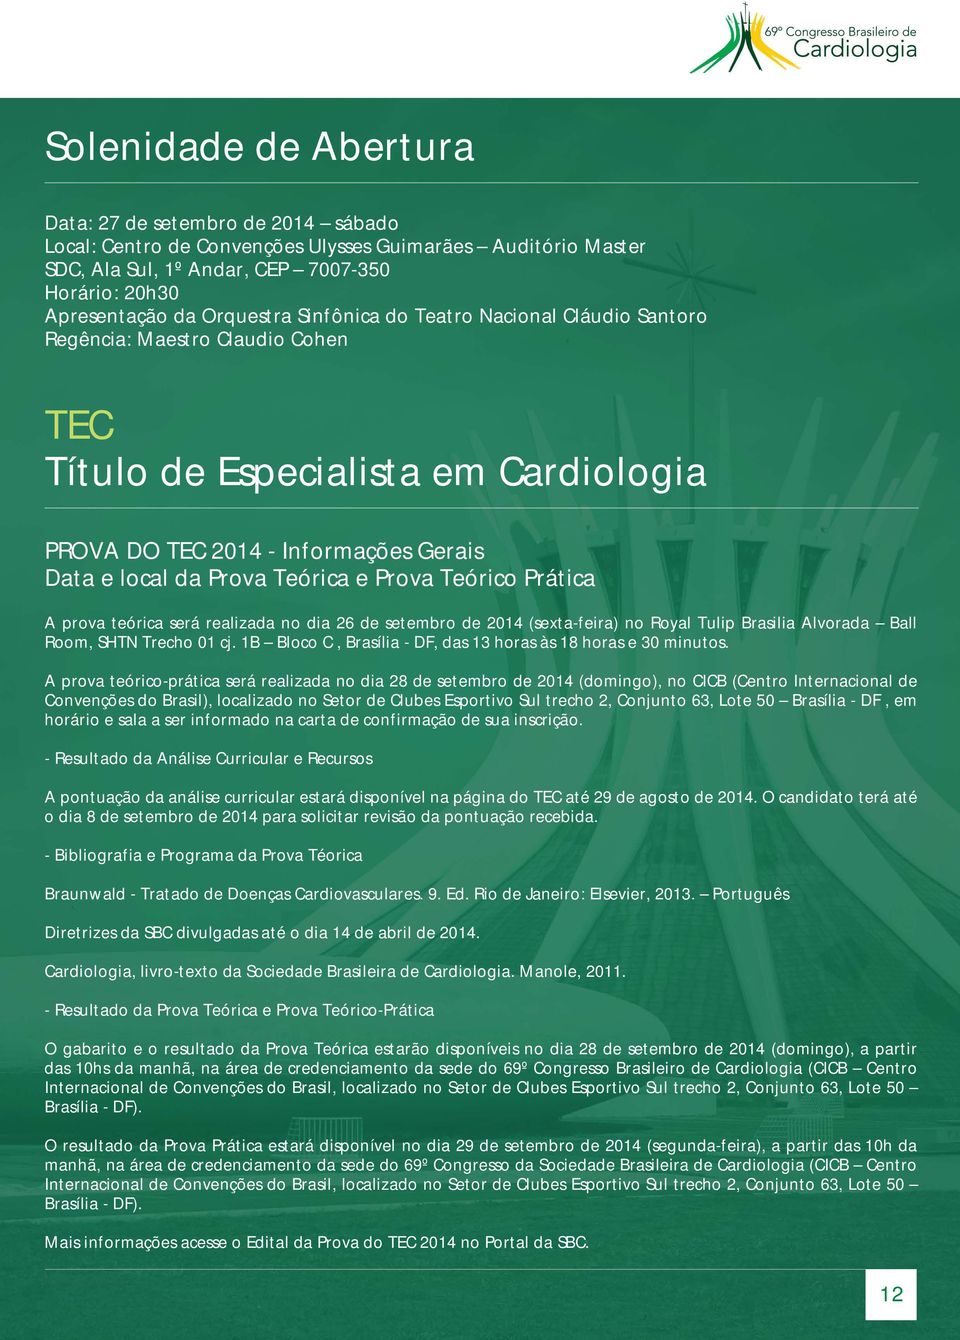 Teórico Prática A prova teórica será realizada no dia 26 de setembro de 2014 (sexta-feira) no Royal Tulip Brasilia Alvorada Ball Room, SHTN Trecho 01 cj.